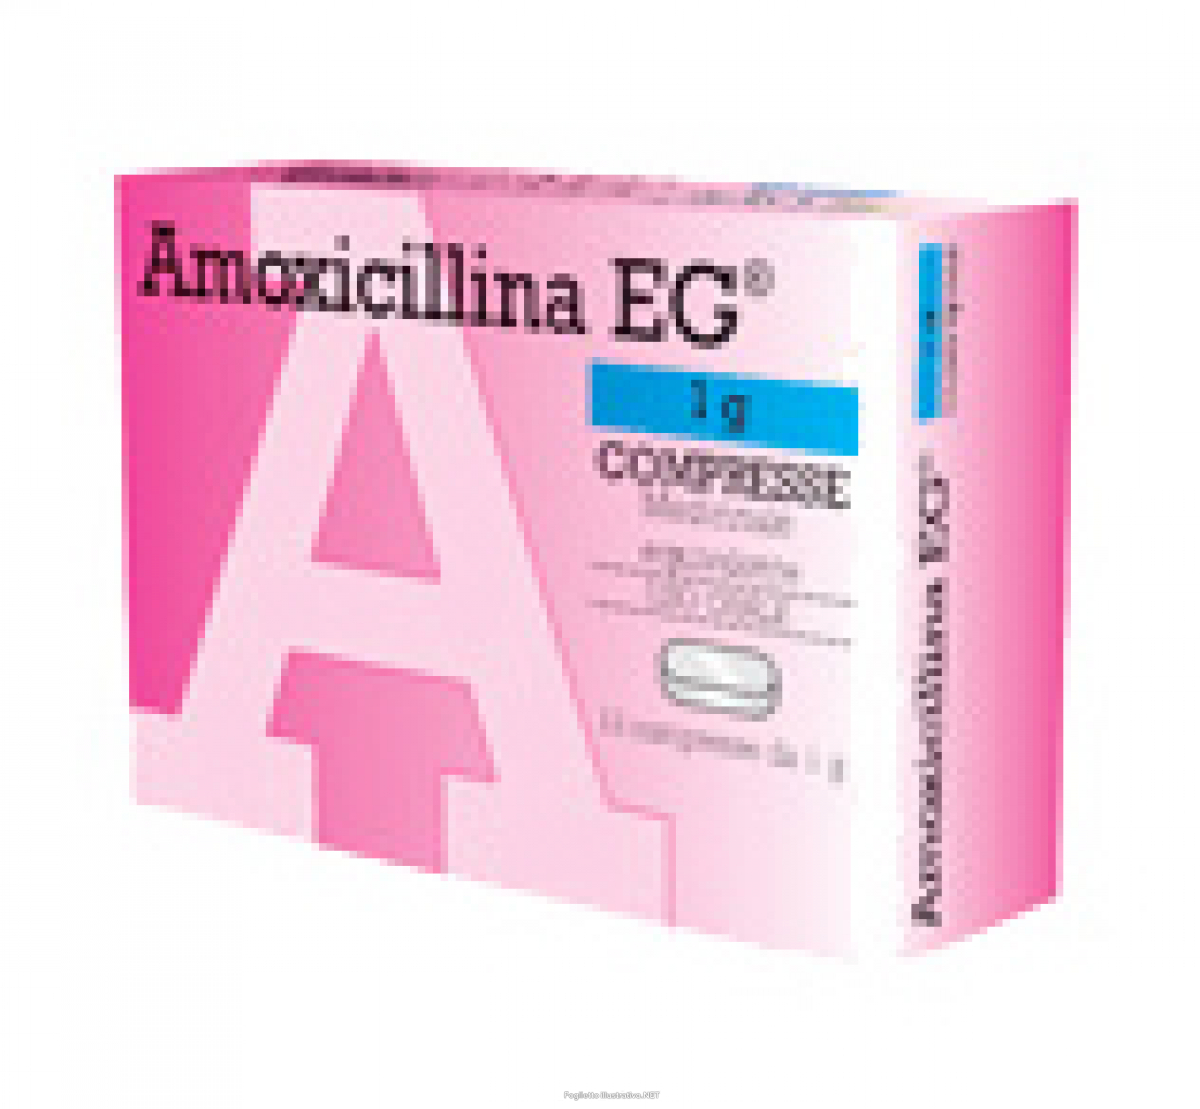 Quanto tempo impiega amoxicillina a fare effetto?